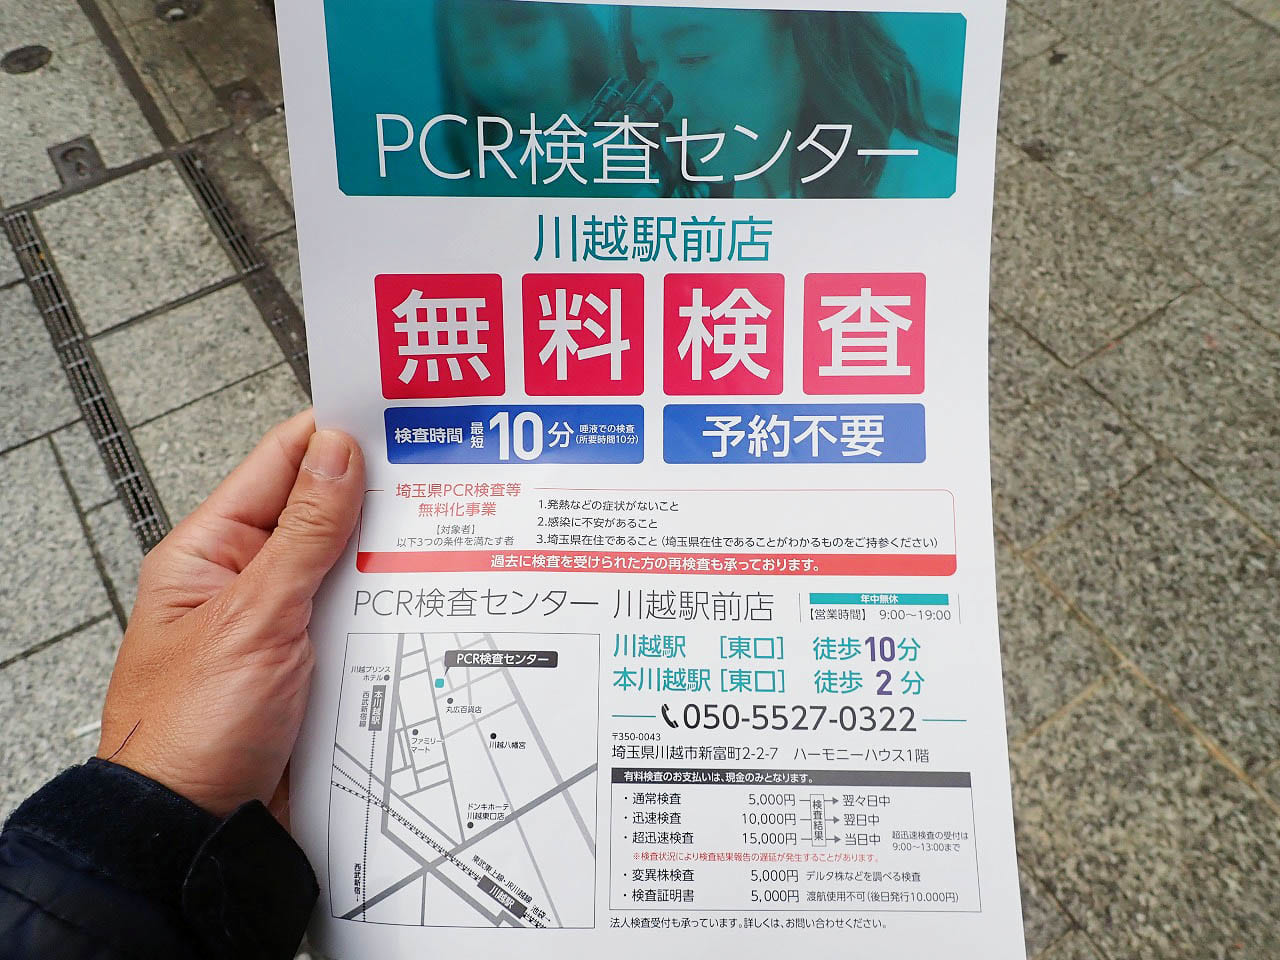 無料のPCR検査を実施している『川越駅前PCR検査センター』